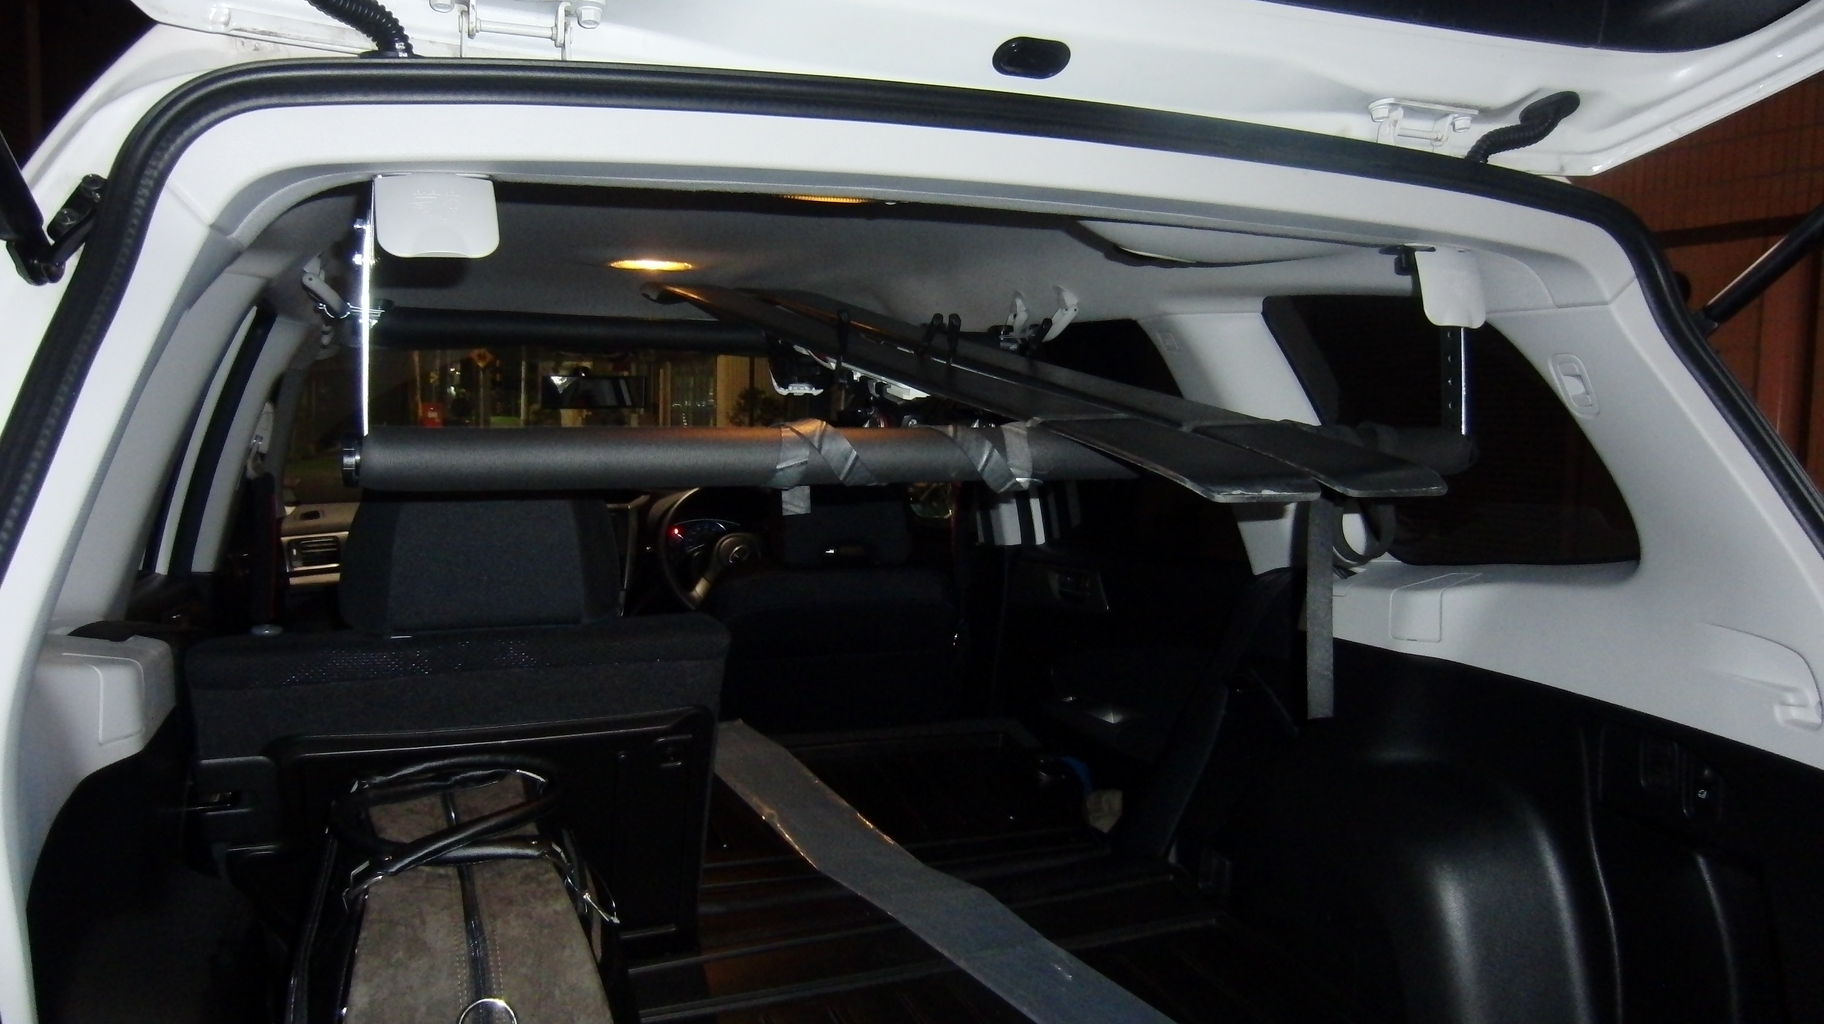 Subaruスバル フォレスター 荷室チャイルドシート金具ありスキー板中積み なみのりこぞう スタッフブログ